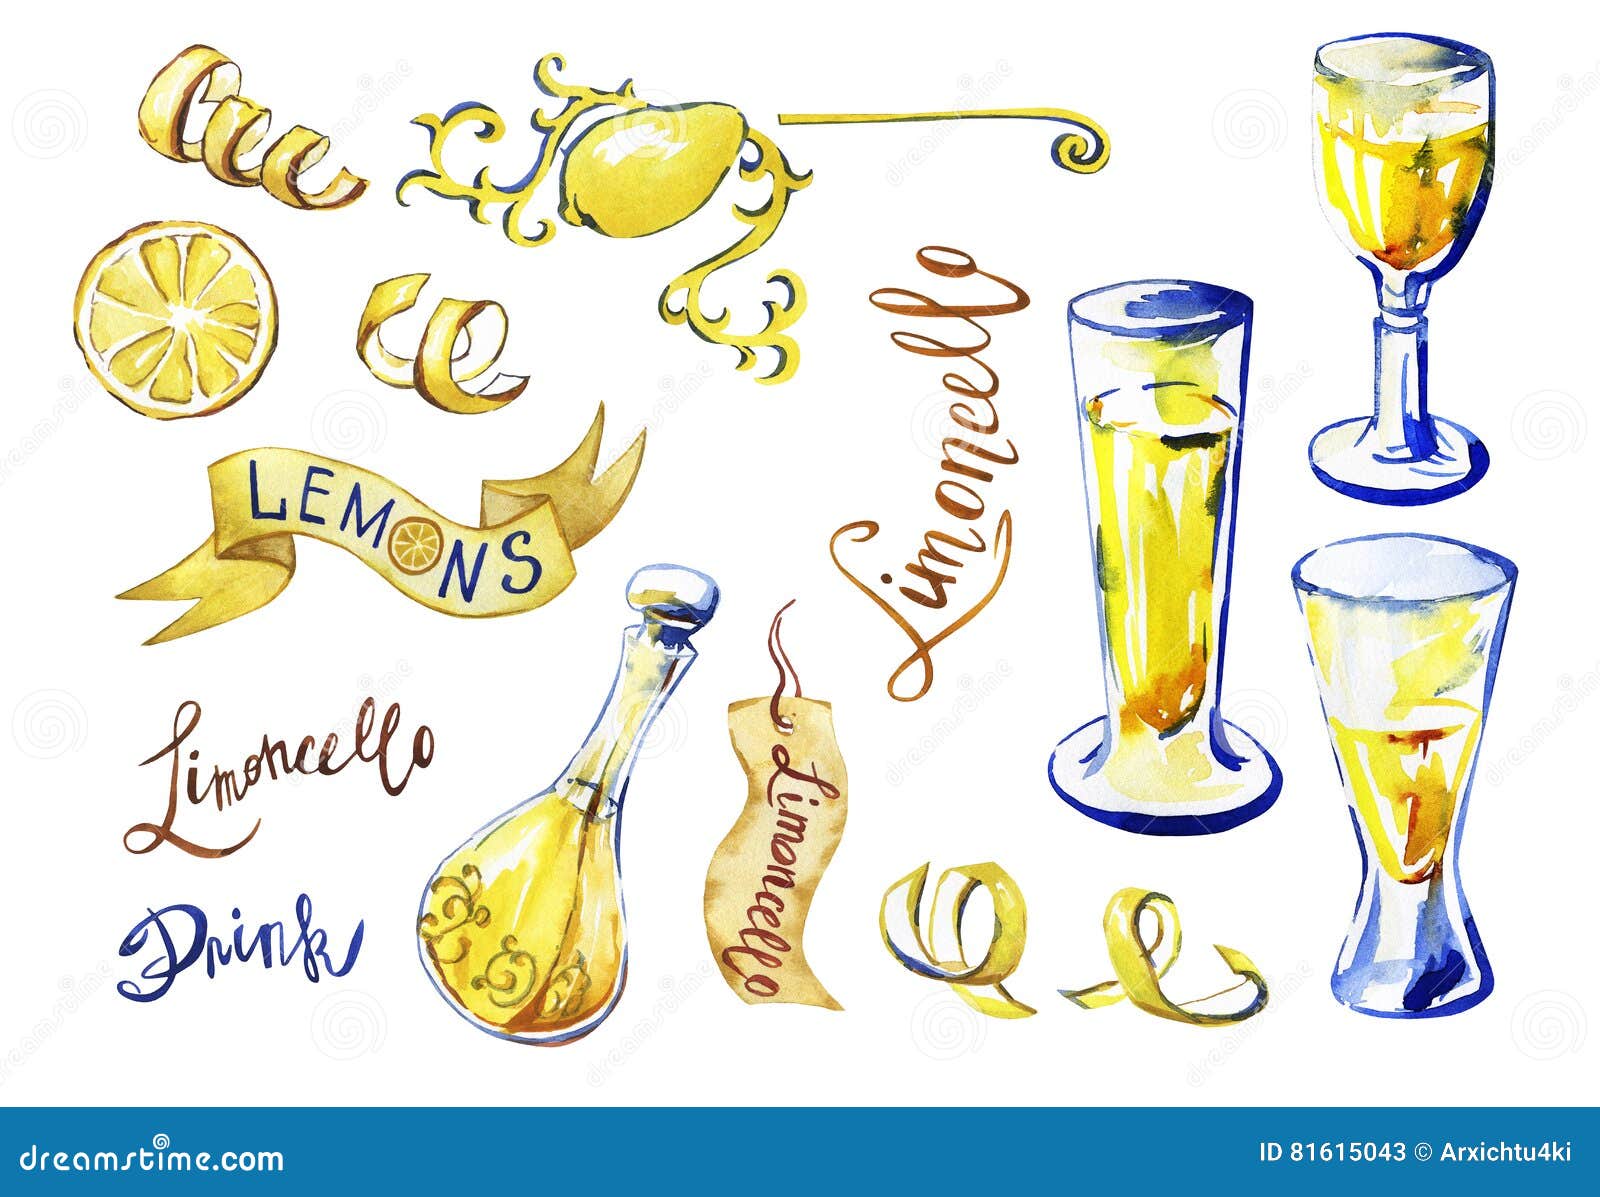 Limoncello Casalingo Tradizionale Del Liquore Del Limone Di Italiann Illustrazione Di Stock Illustrazione Di Illustrazione Botanica